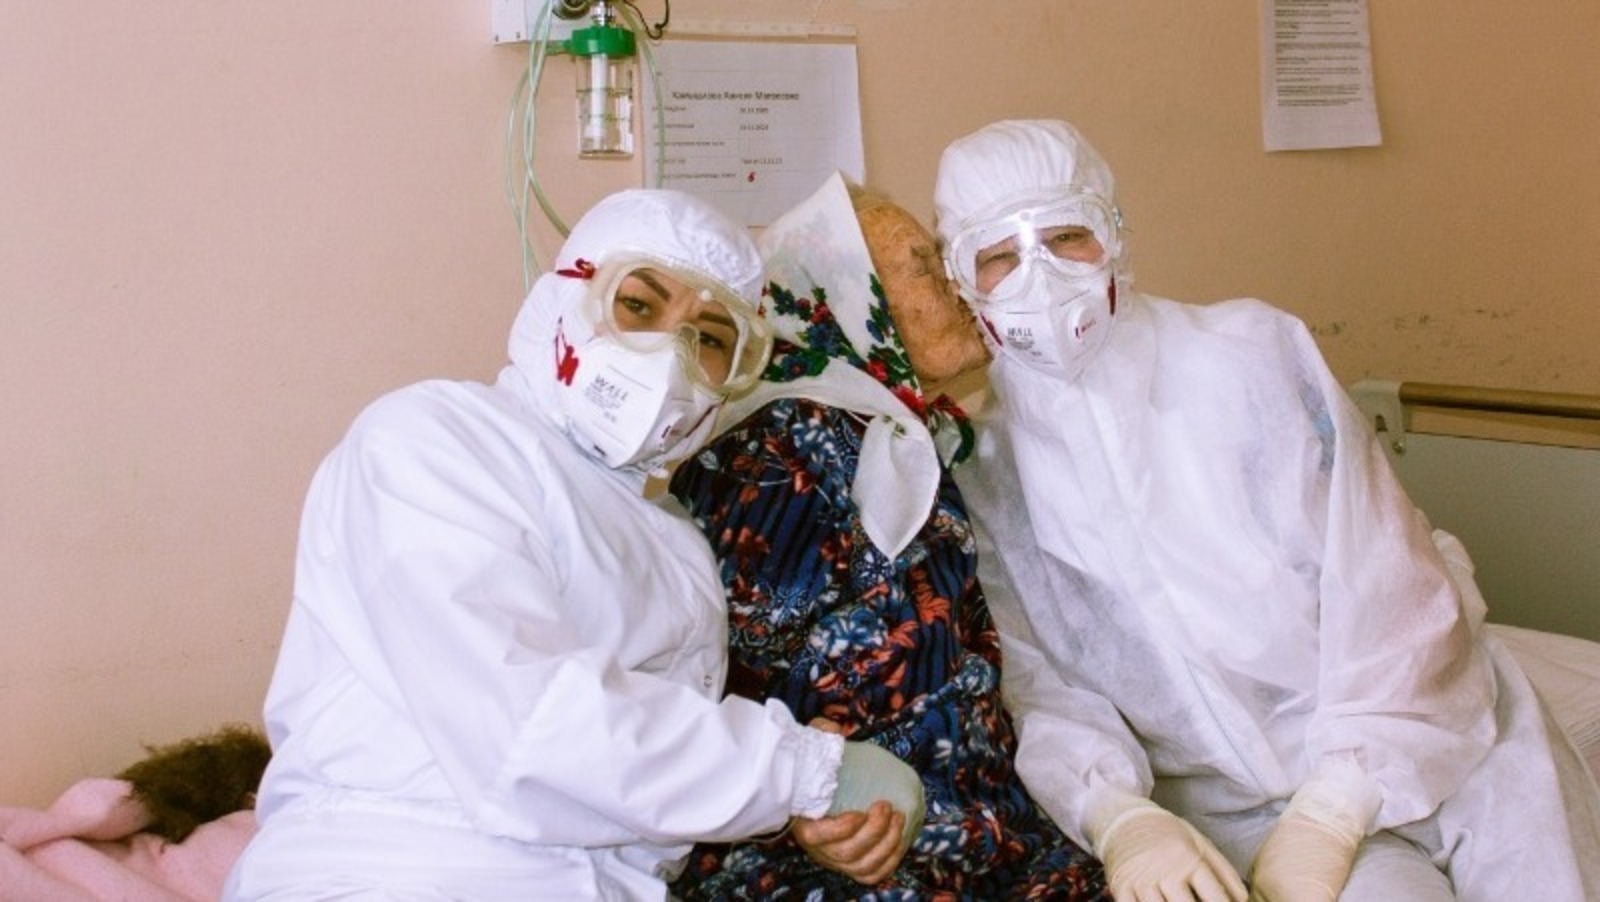 101-летняя жительница Башкирии Анисия Матвеевна Камышлова победила коронавирус. На днях пожилую женщину выписали из ковид-госпиталя № 2 в Кумертау